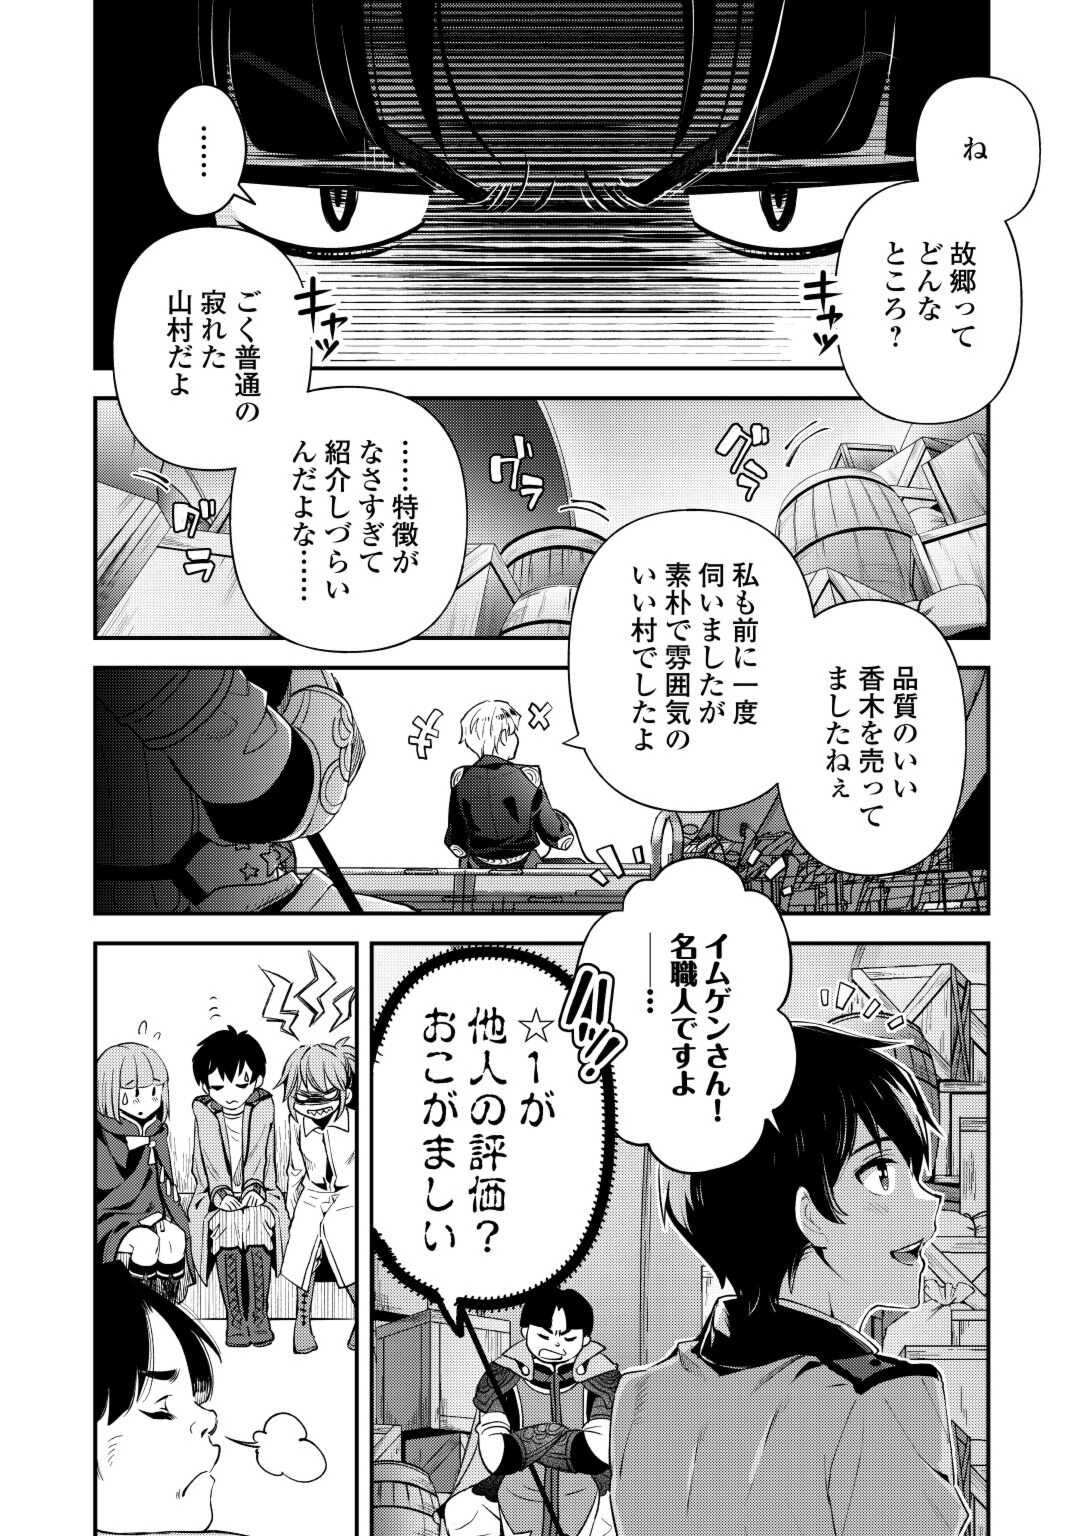 Ochikobore 1 Mahou Tsukai wa, Kyou mo Muishiki ni Cheat o Tsukau - Chapter 31 - Page 2